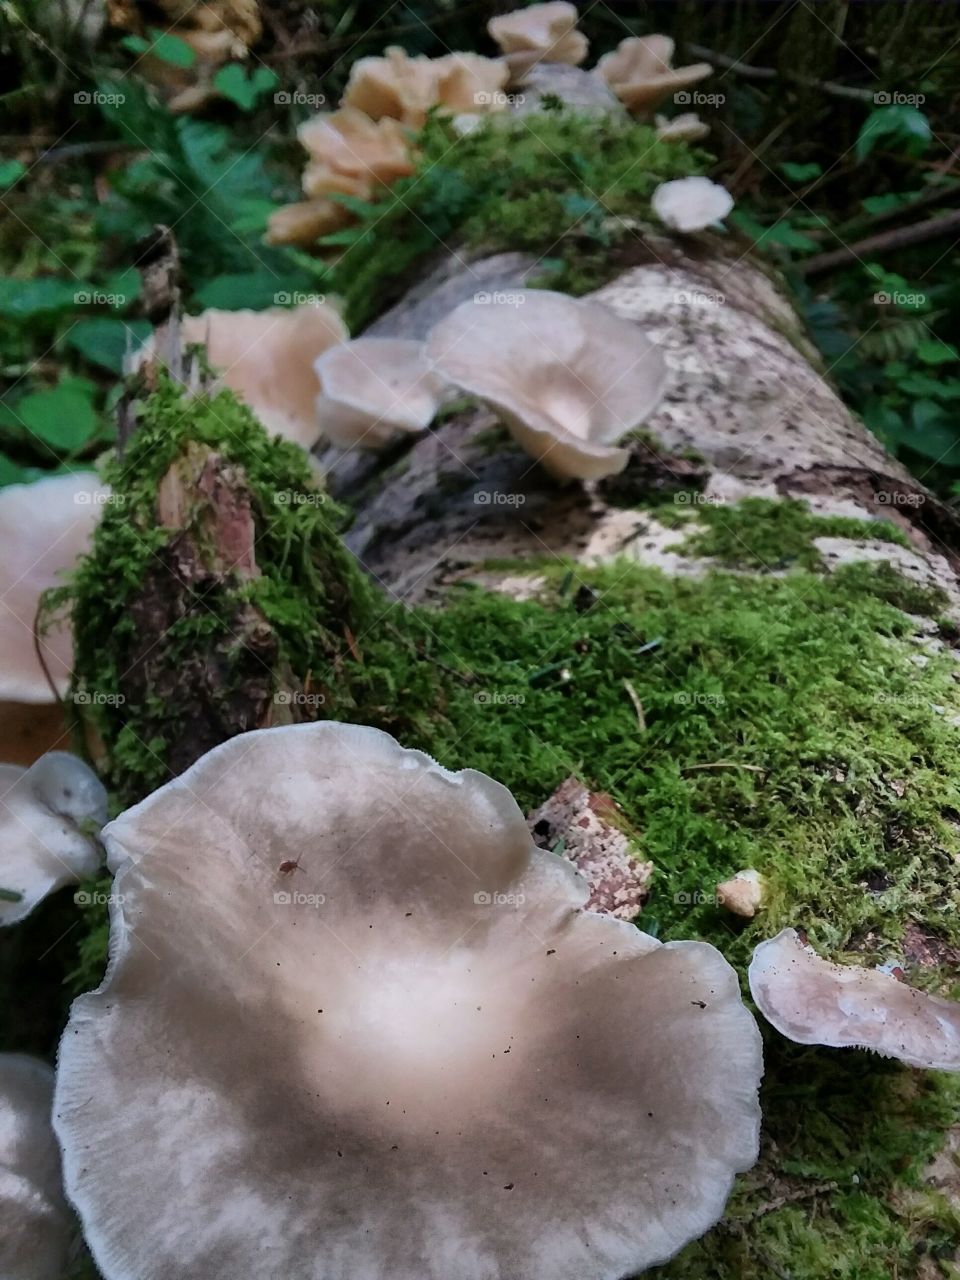 More Tree Fungi